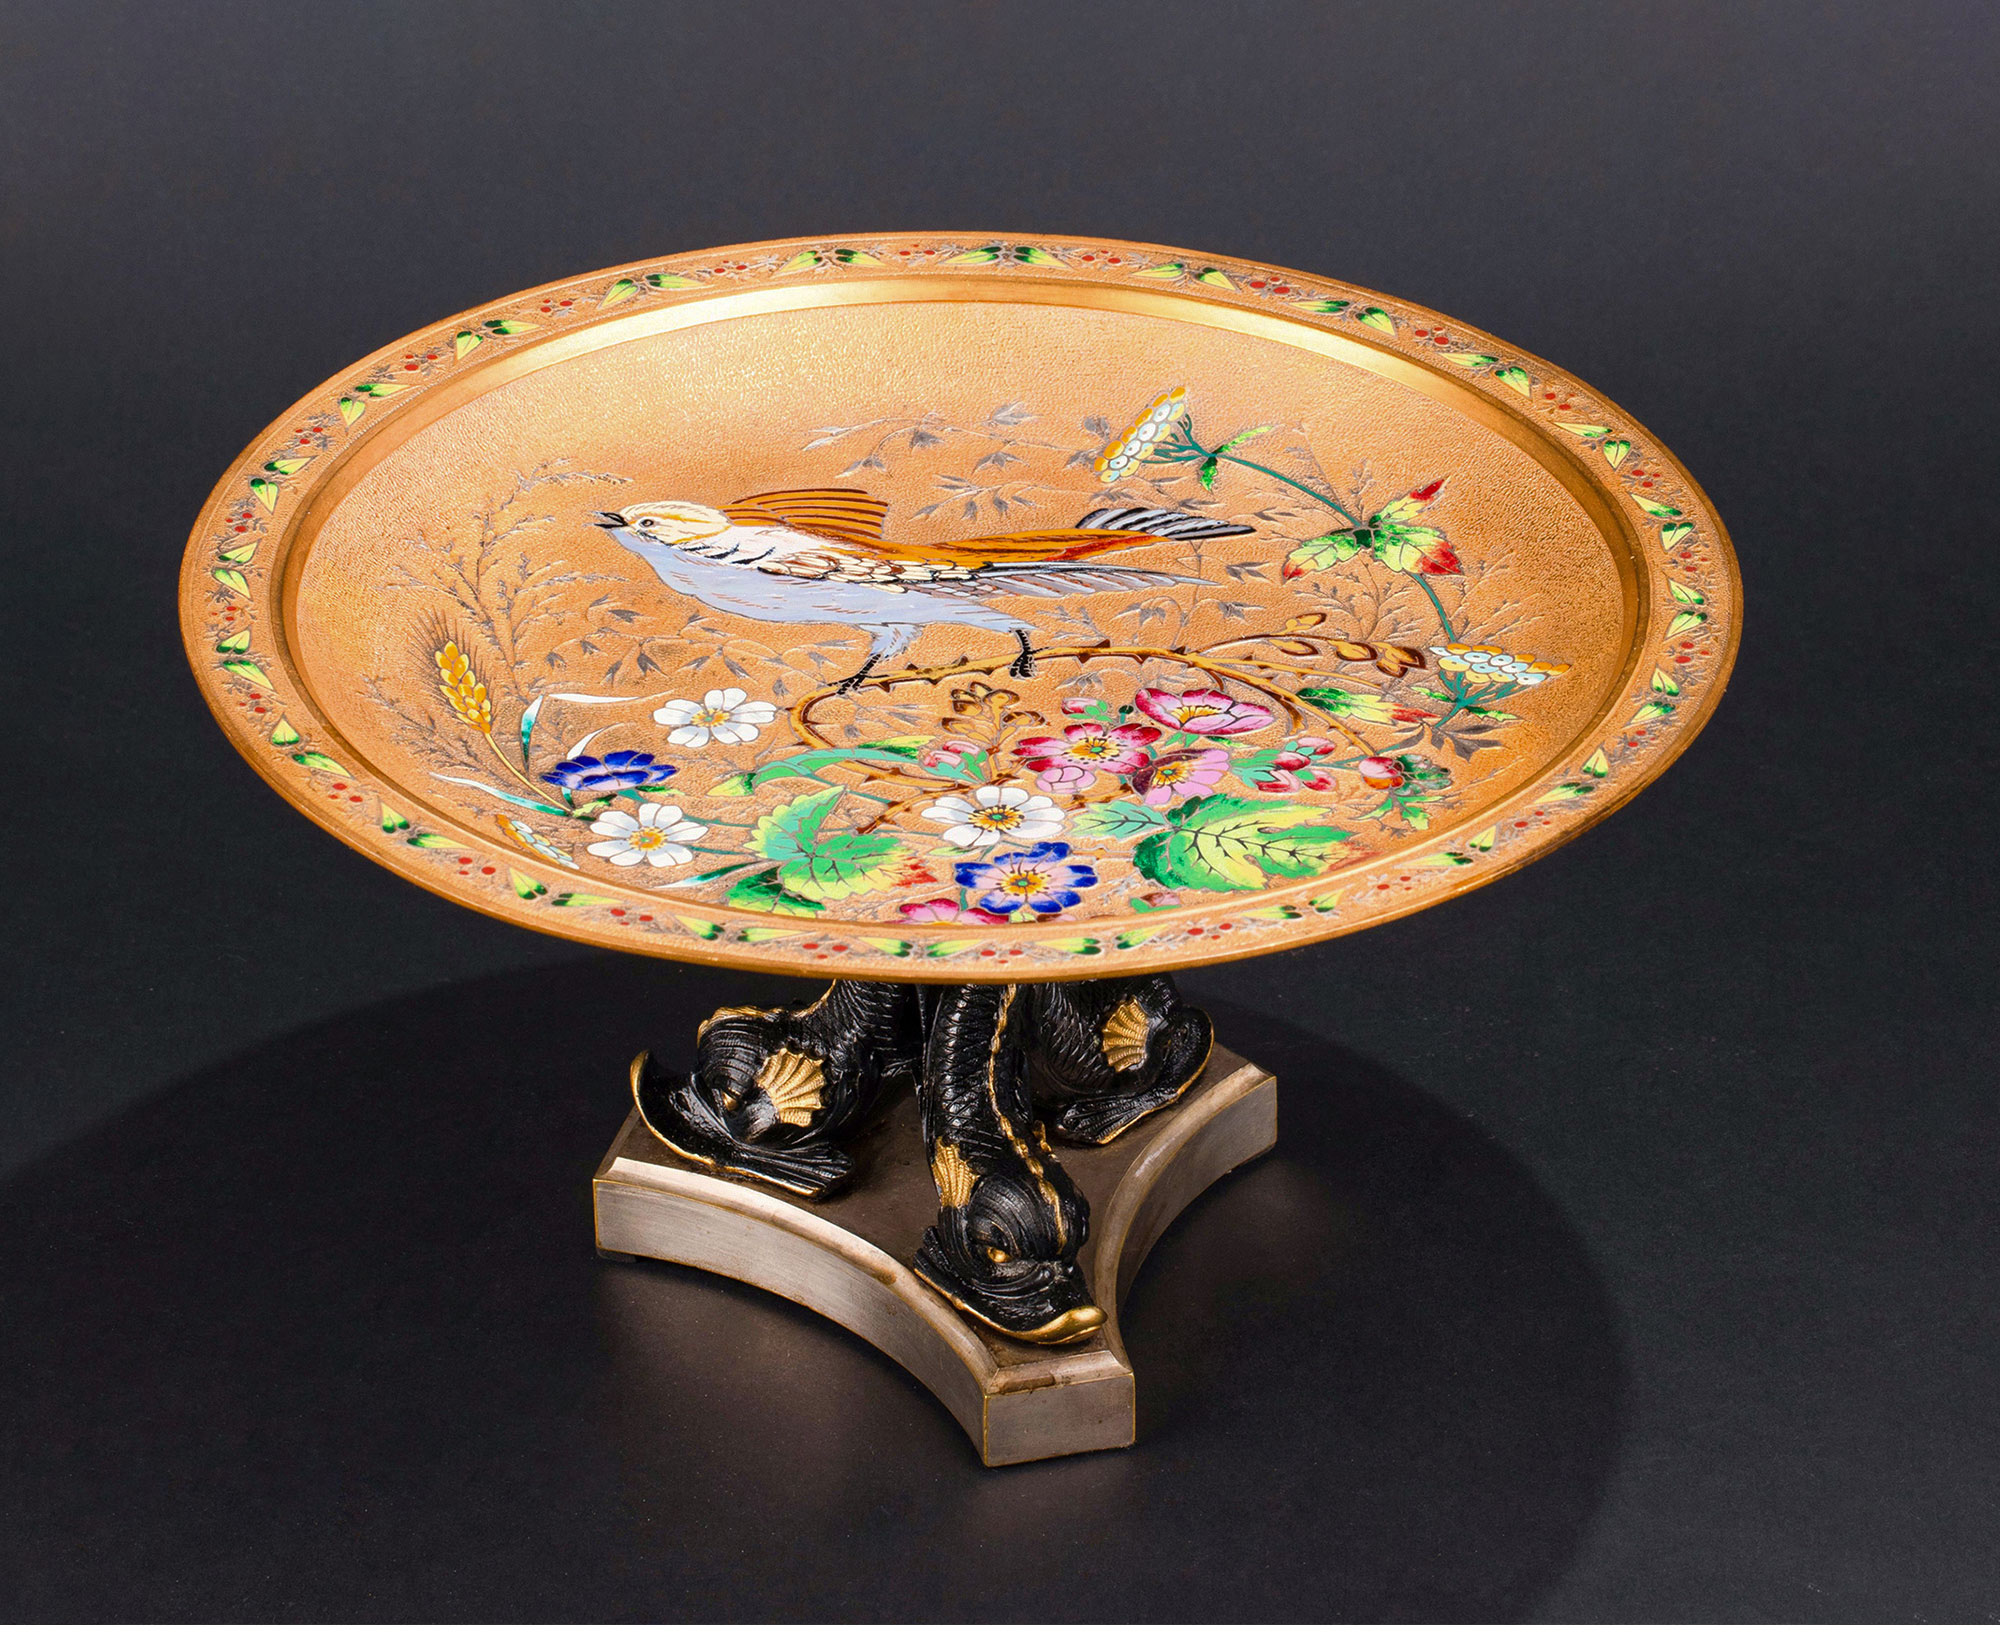 独角鹿西洋古董1890年代法国出品东方风格花鸟主题珐琅彩绘铜鎏金赏盘